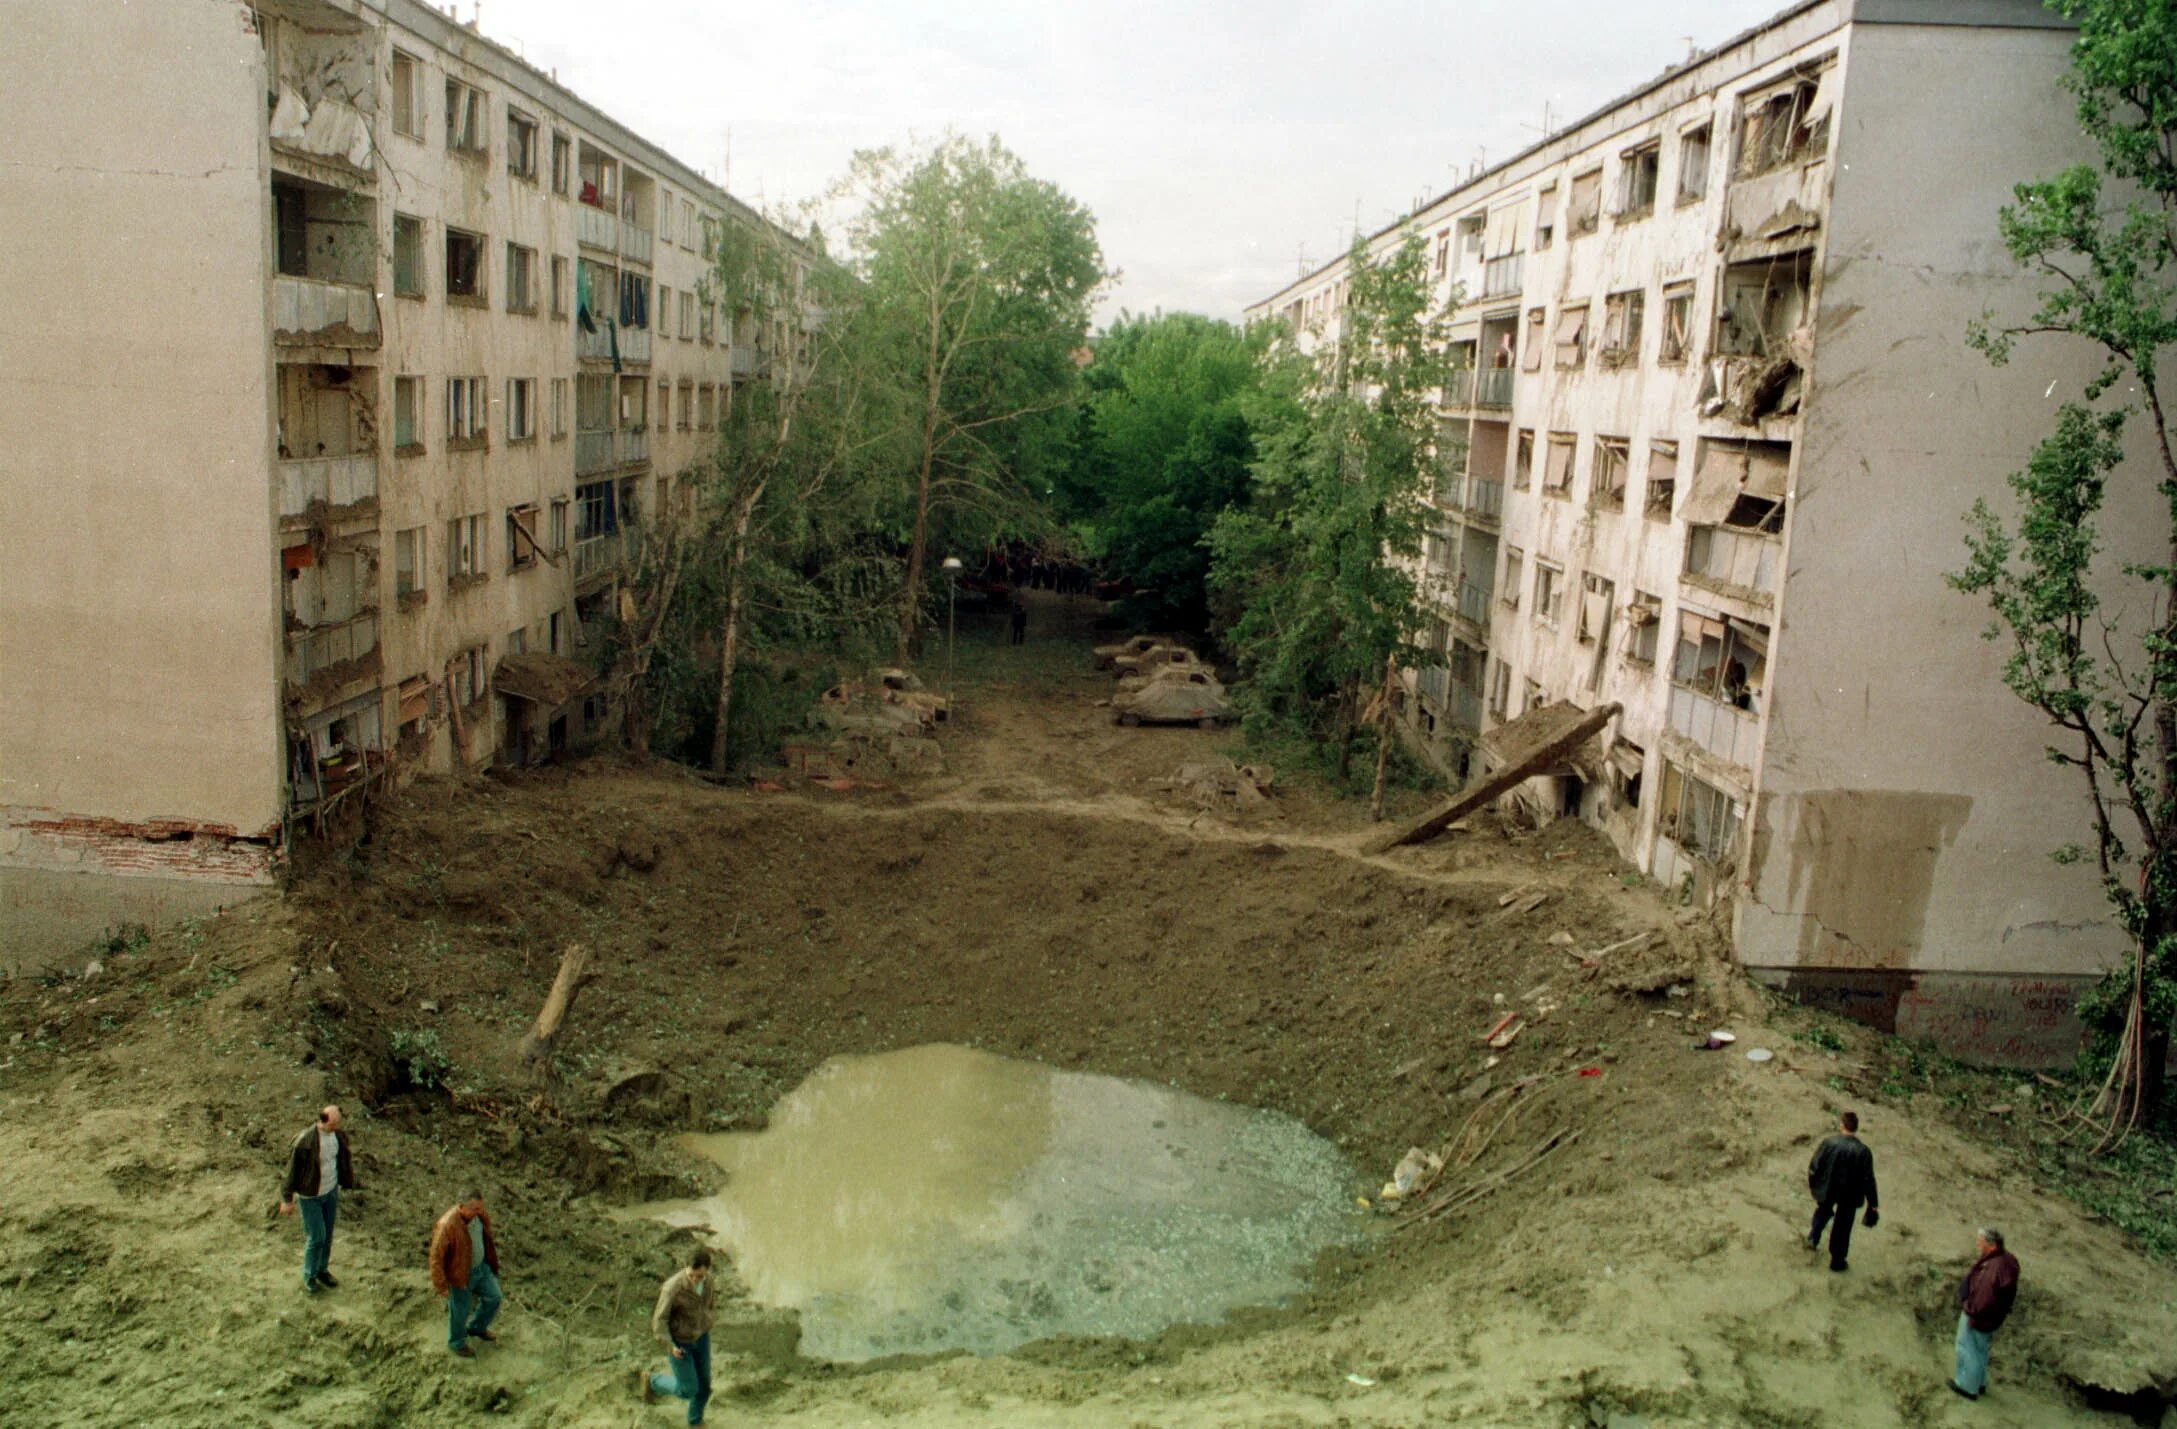 Нато 99 год. Нови сад 1999 год бомбардировка. Бомбардировка Югославии силами НАТО 1999. Бомбардировка Белграда 1999.